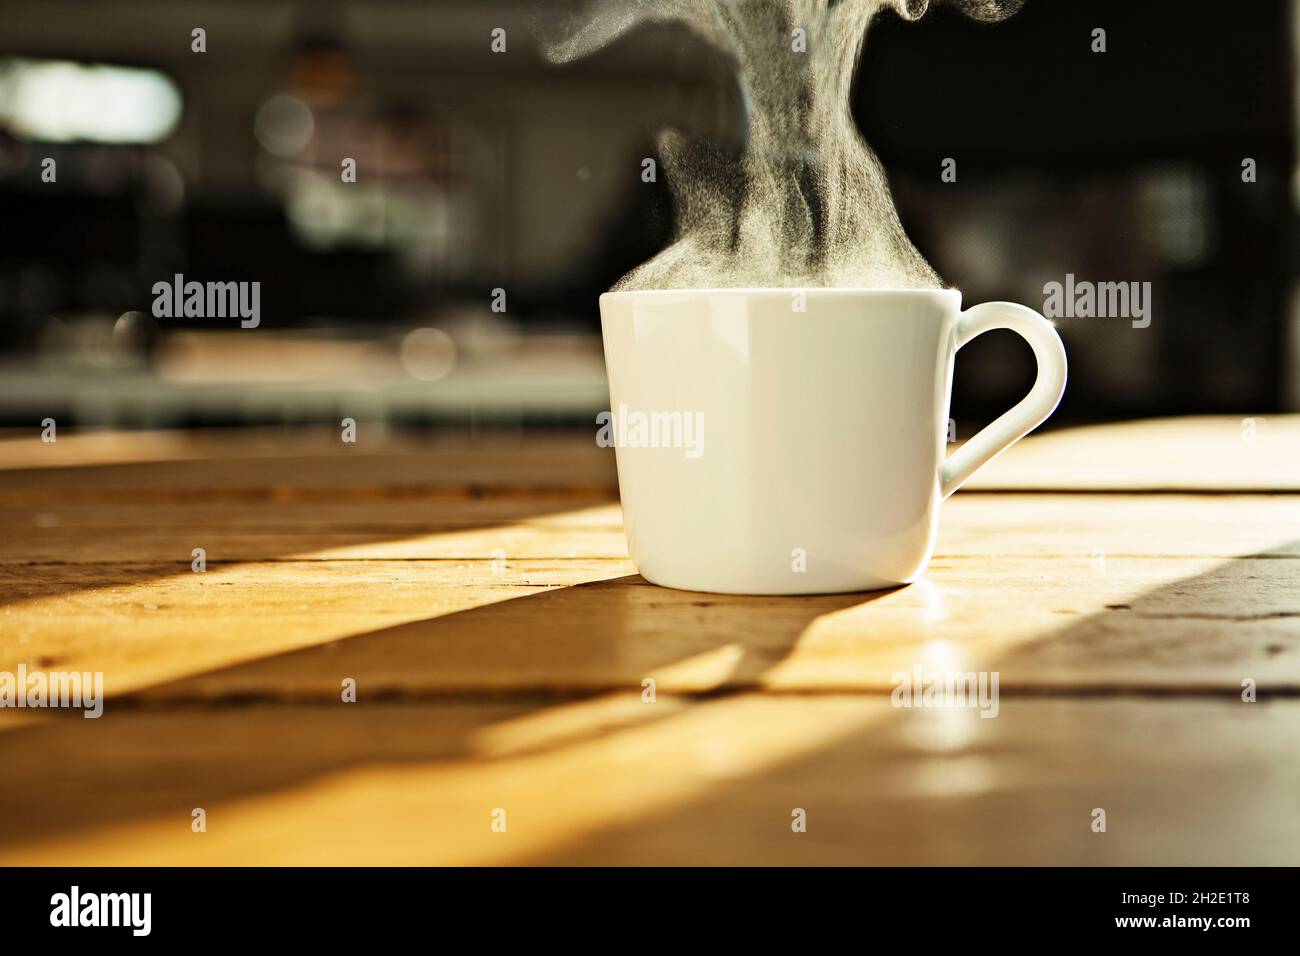 Tasse à café/thé blanc, tasse blanche avec boisson chaude sur table en bois, rétro-éclairée. Banque D'Images